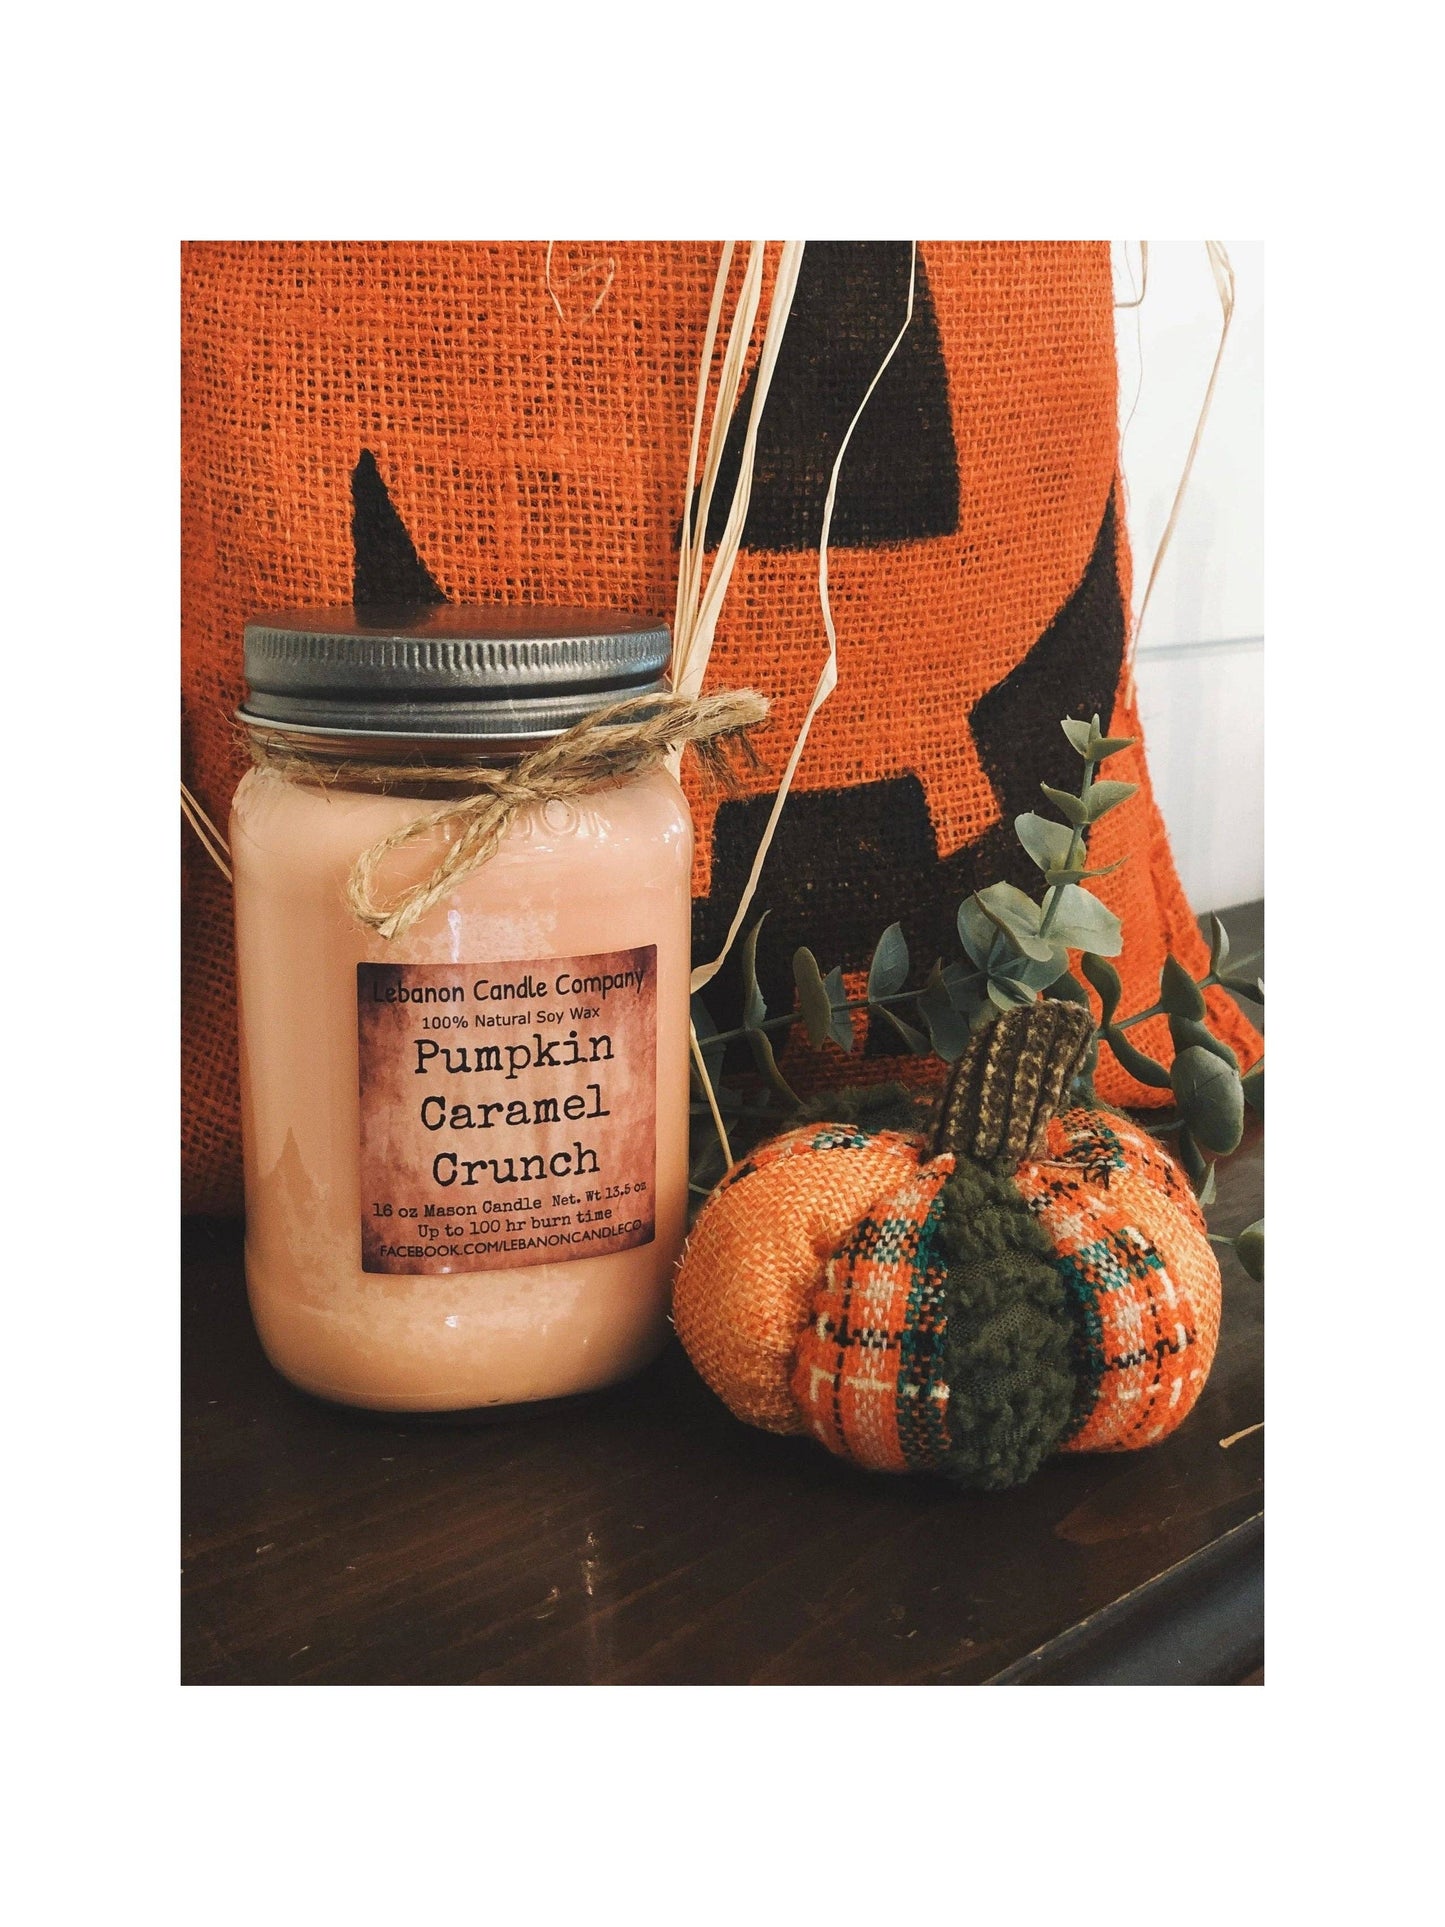 Lebanon Candle Company - Pumpkin Caramel Crunch